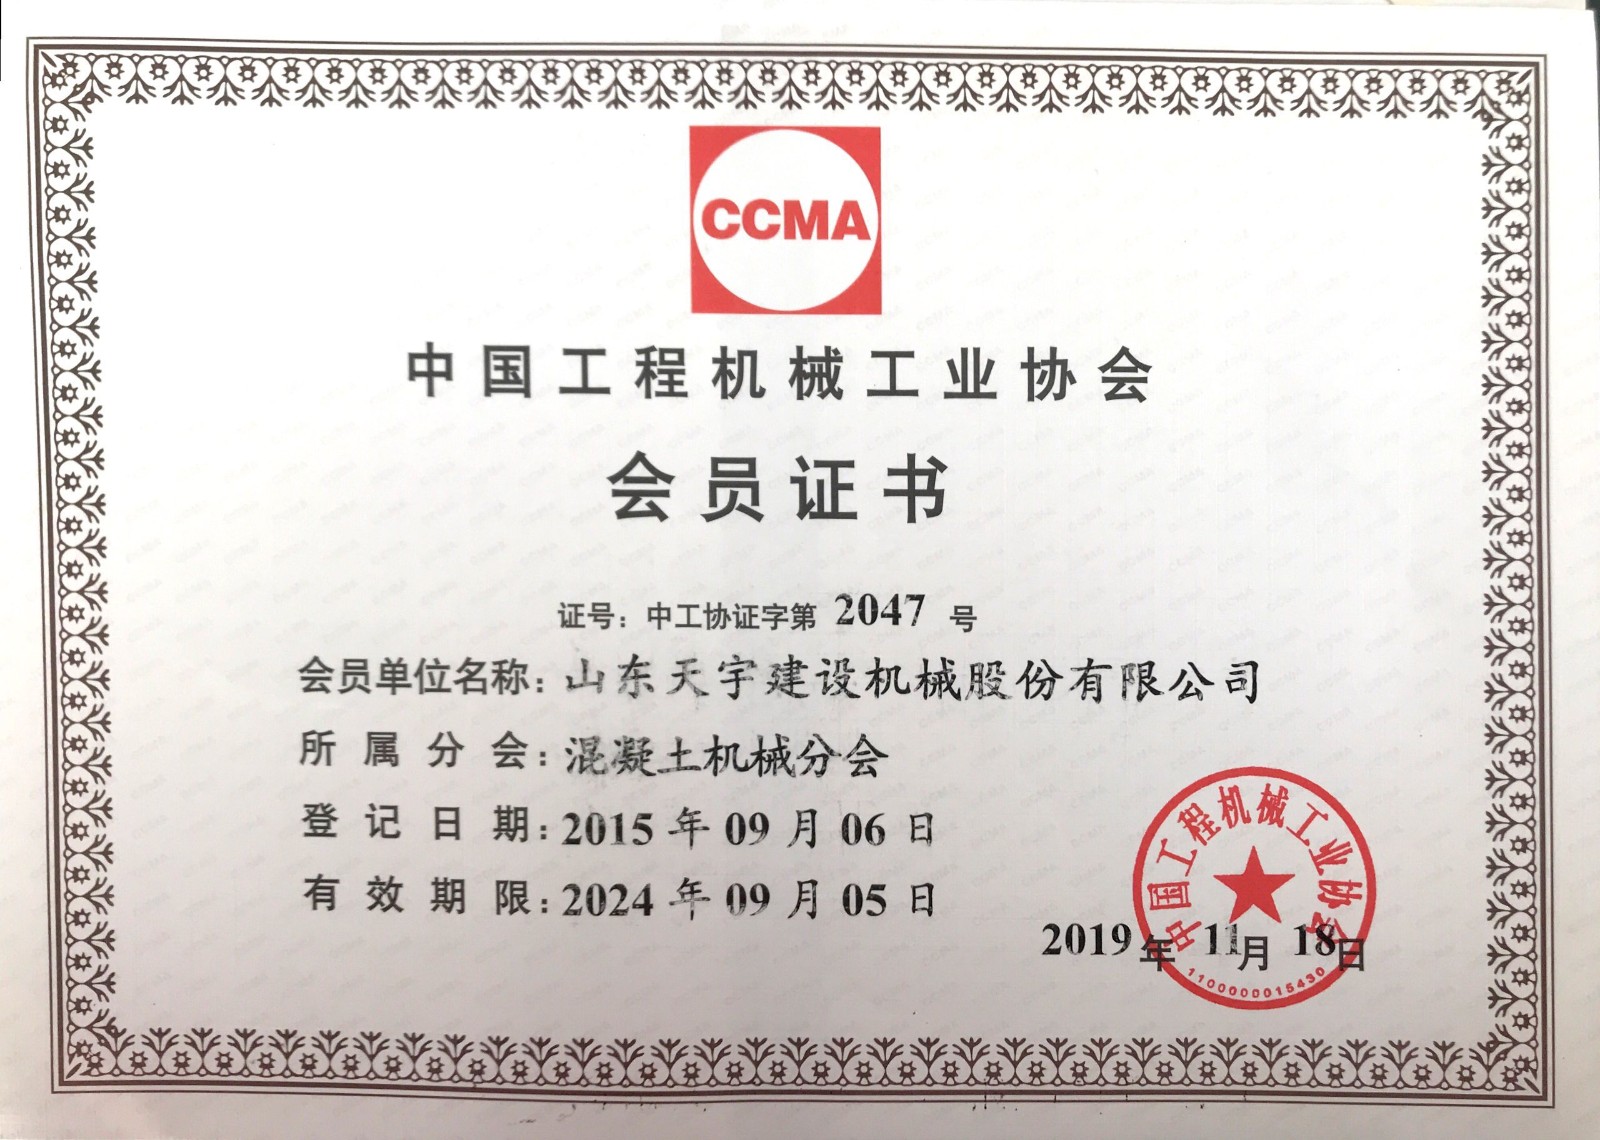 22.中国工程机械协会会员证书.jpg